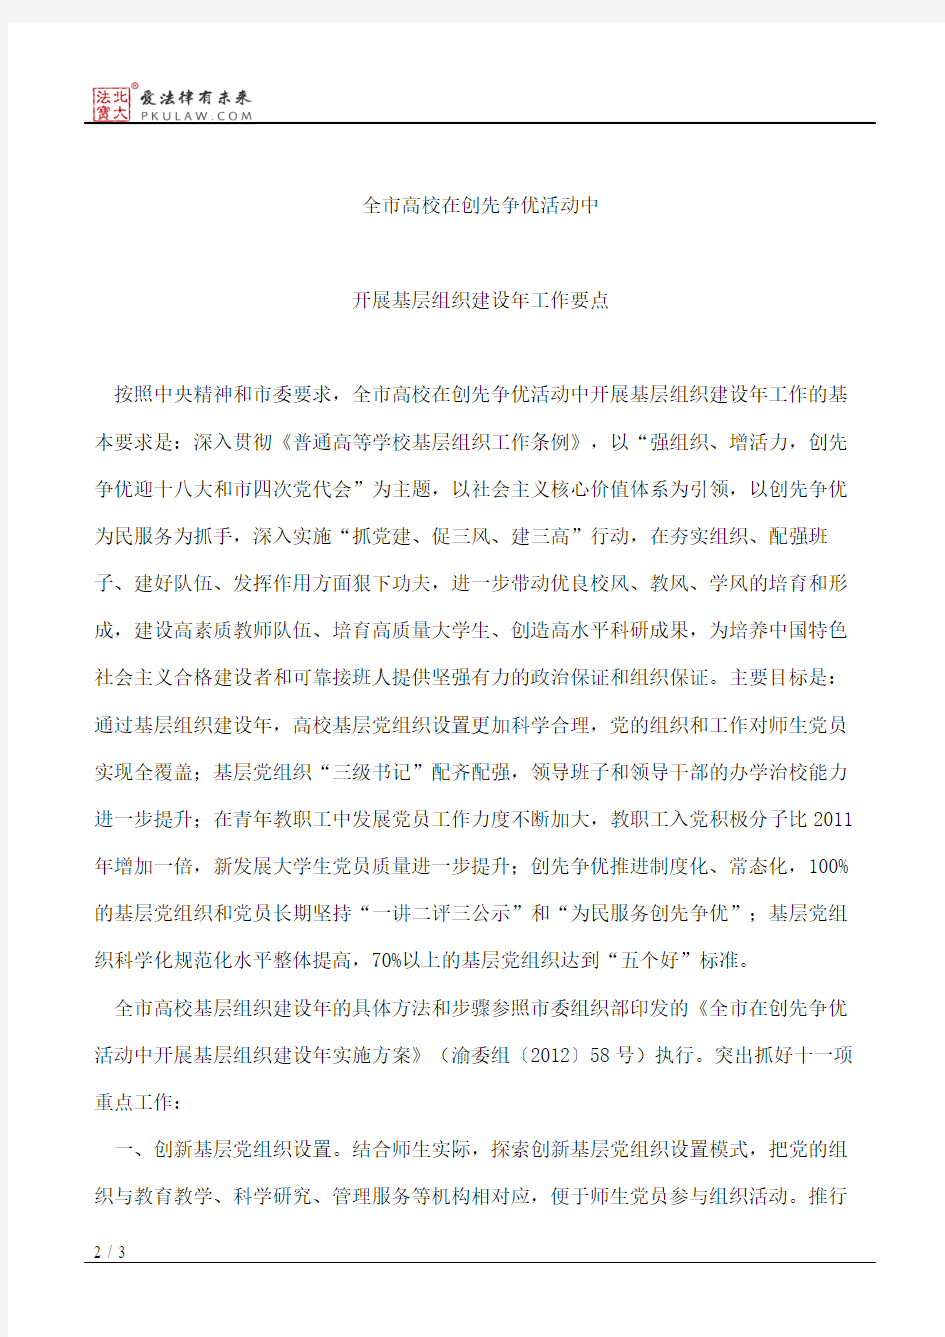 中共重庆市委组织部、中共重庆市委教育工作委员会关于印发《全市